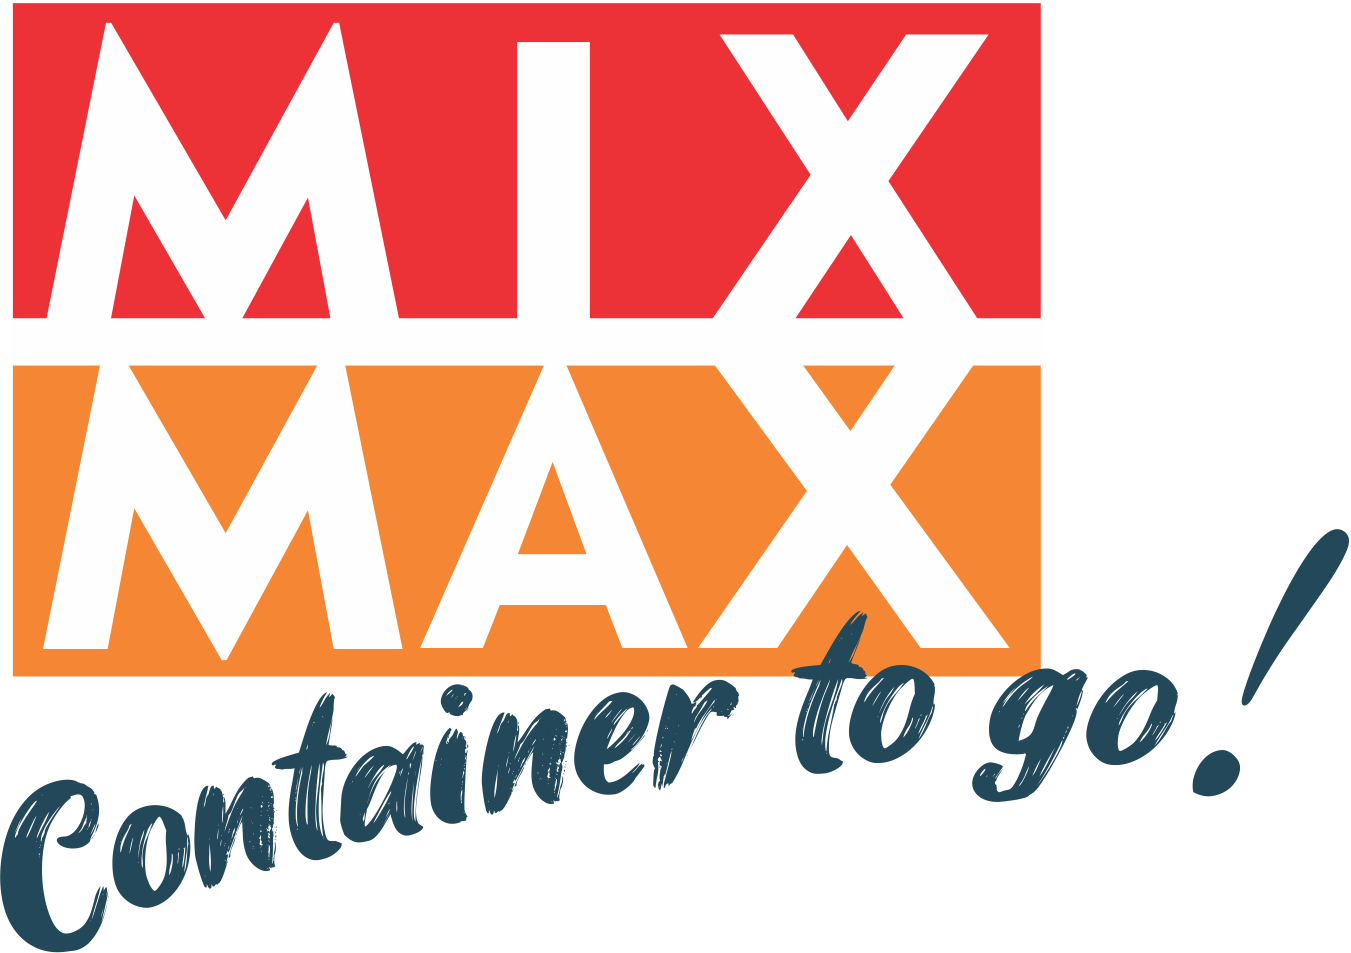 MIX MAX